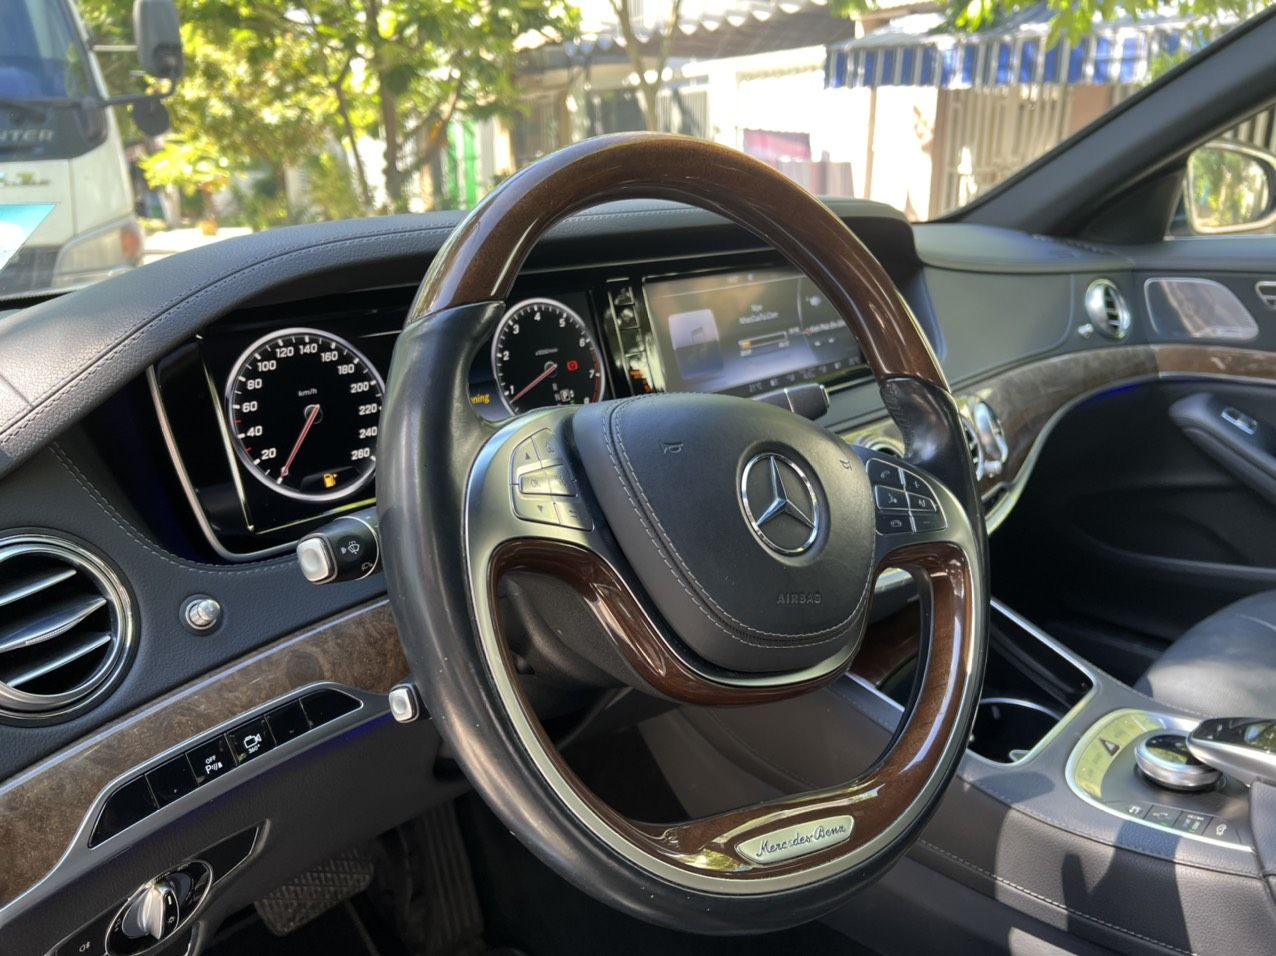 Mercedes-Benz 2016 - [Xe hot] Hàng nguyên mộc - Giấy tờ pháp lý đầy đủ - Hỗ trợ bank tới 70% - Hỗ trợ mọi thủ tục